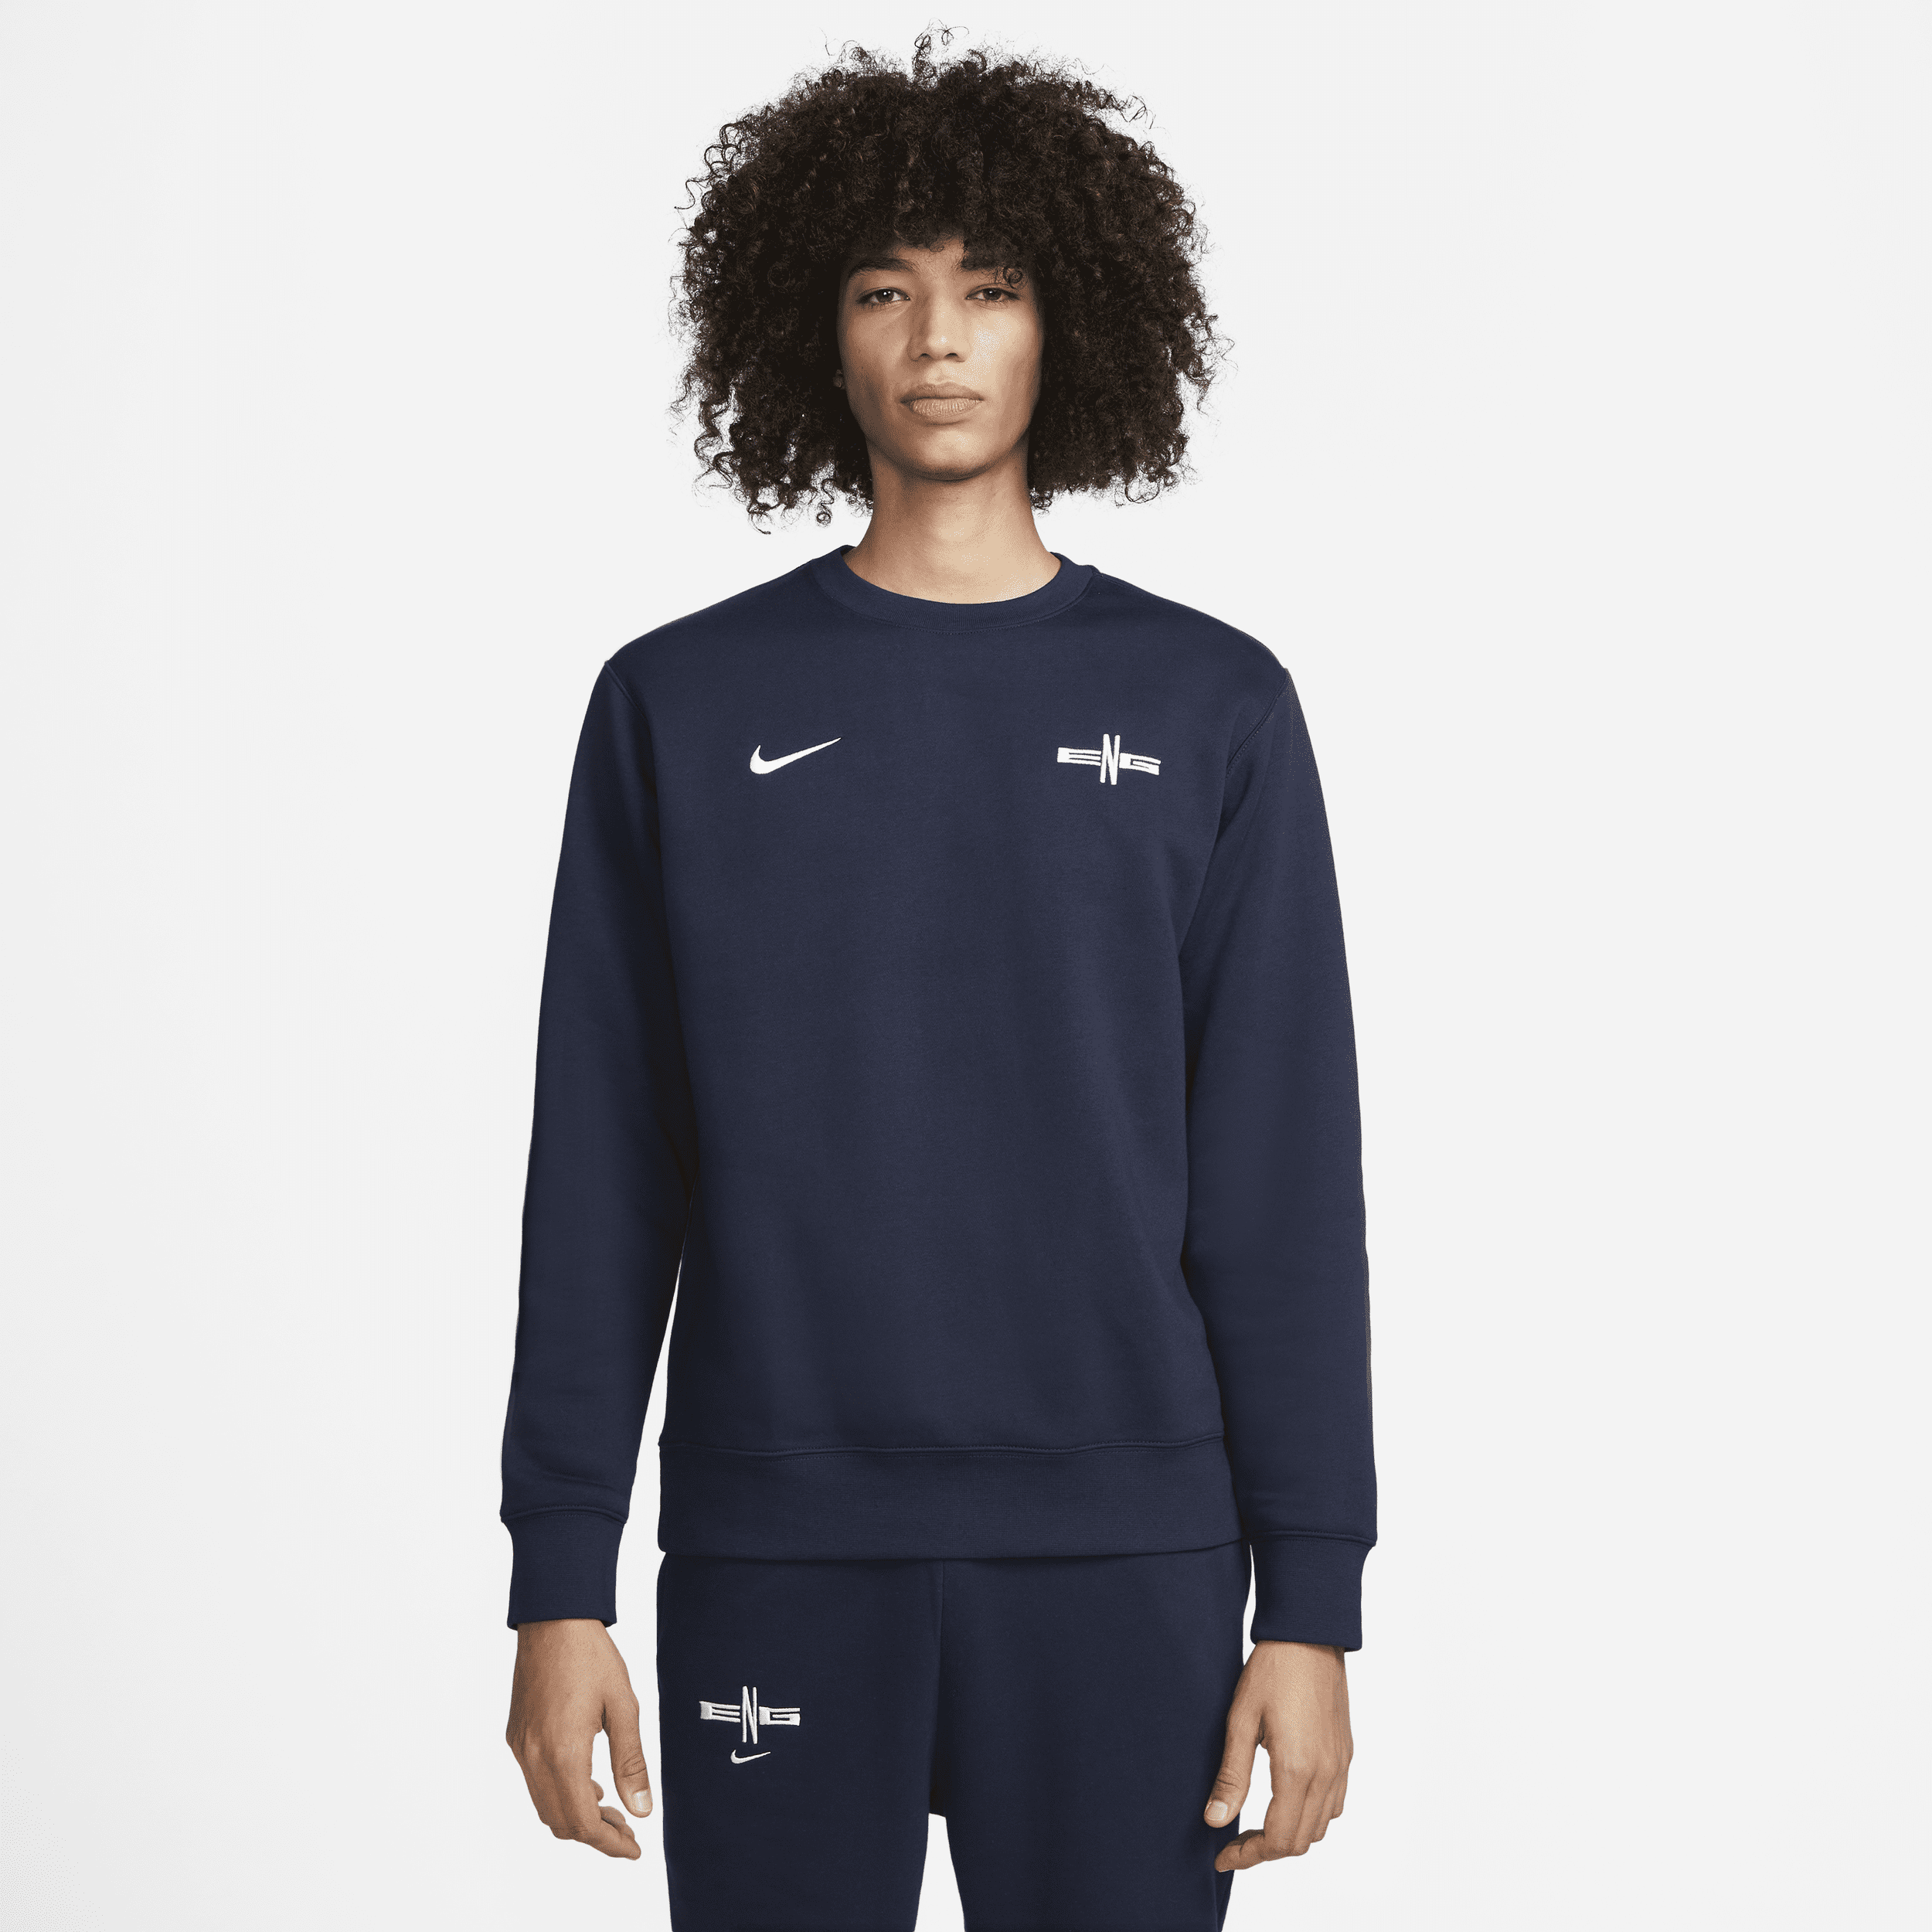 Engeland Club Nike voetbaltrui met ronde hals voor heren - Blauw